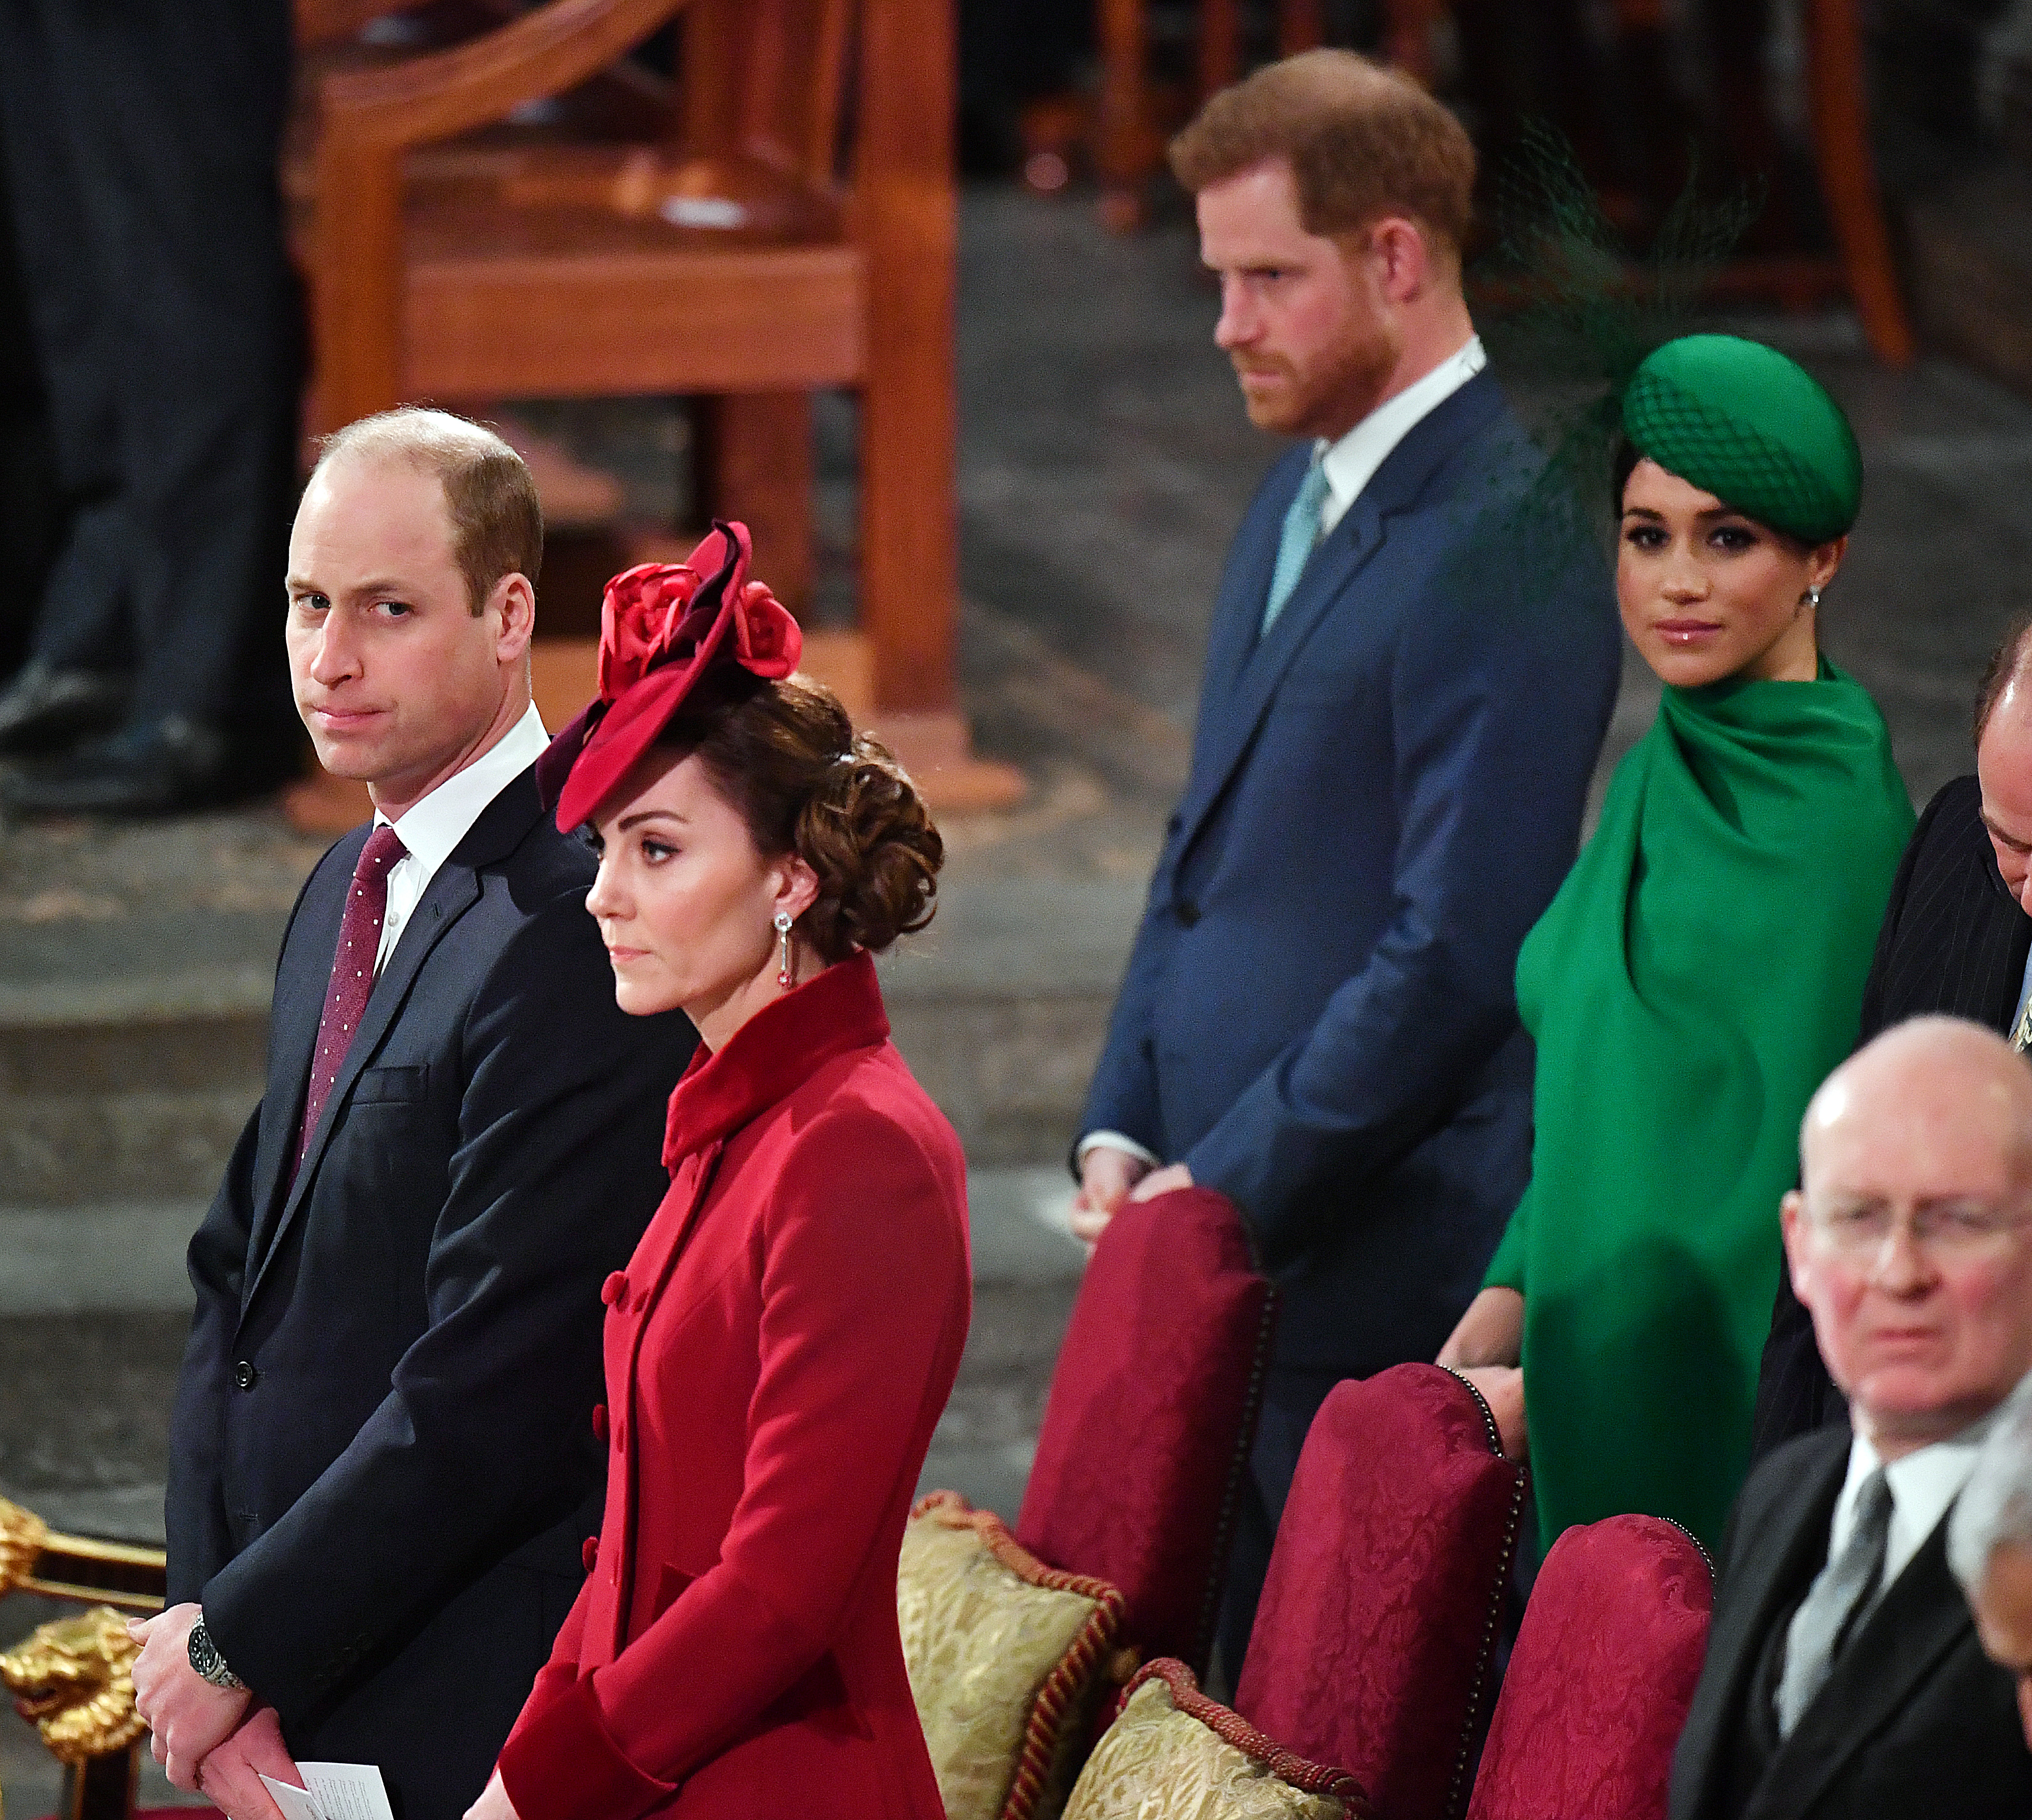 Le prince William, la princesse Catherine, le prince Harry et Meghan Markle lors du service de la Journée du Commonwealth 2020, le 9 mars 2020 à Londres, en Angleterre | Source : Getty Images